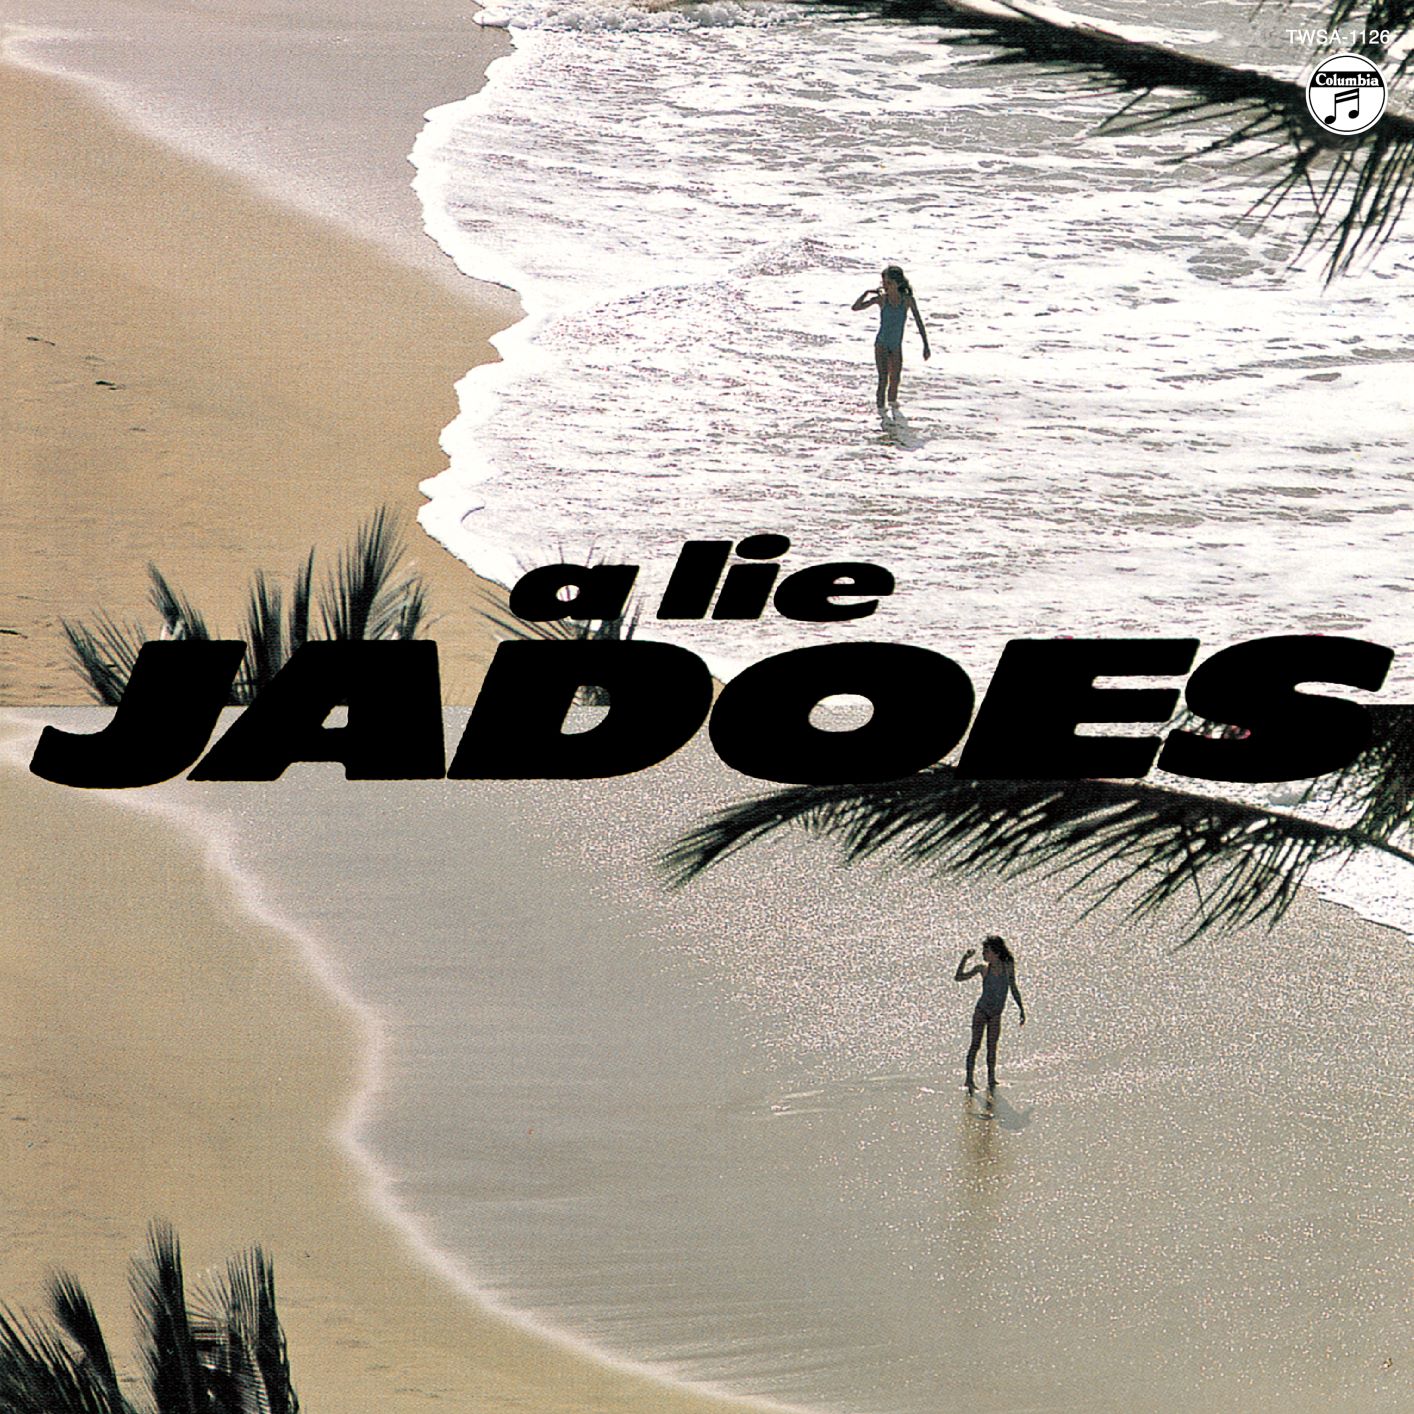 ジャドーズ / THE JADOES アルバム 2タイトルセット - 邦楽